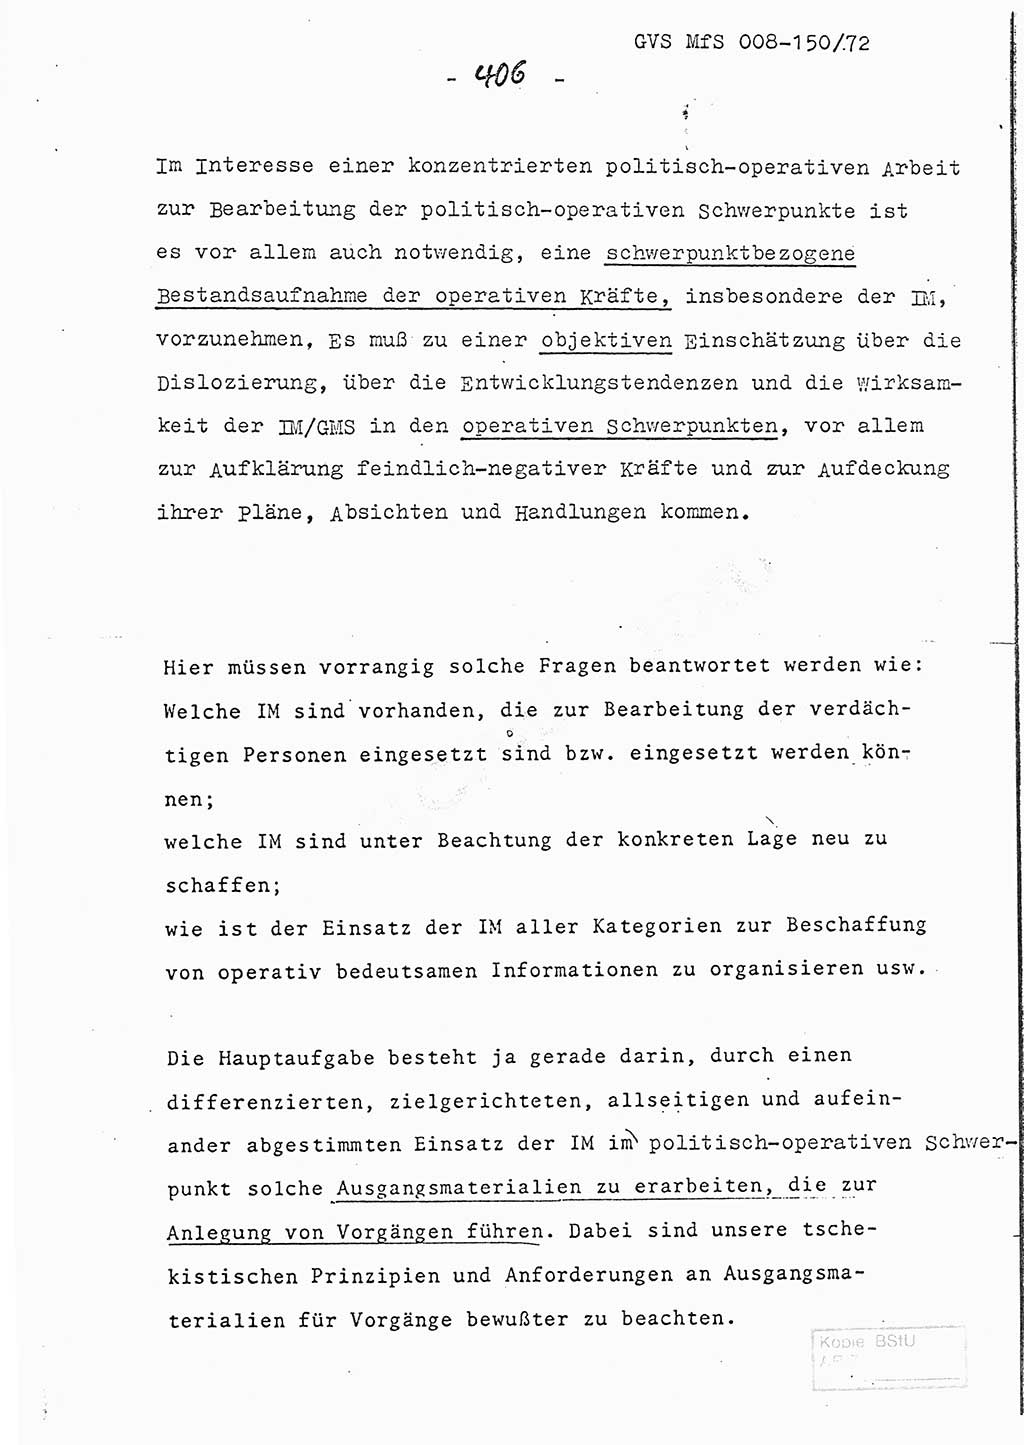 Referat (Entwurf) des Genossen Minister (Generaloberst Erich Mielke) auf der Dienstkonferenz 1972, Ministerium für Staatssicherheit (MfS) [Deutsche Demokratische Republik (DDR)], Der Minister, Geheime Verschlußsache (GVS) 008-150/72, Berlin 25.2.1972, Seite 406 (Ref. Entw. DK MfS DDR Min. GVS 008-150/72 1972, S. 406)